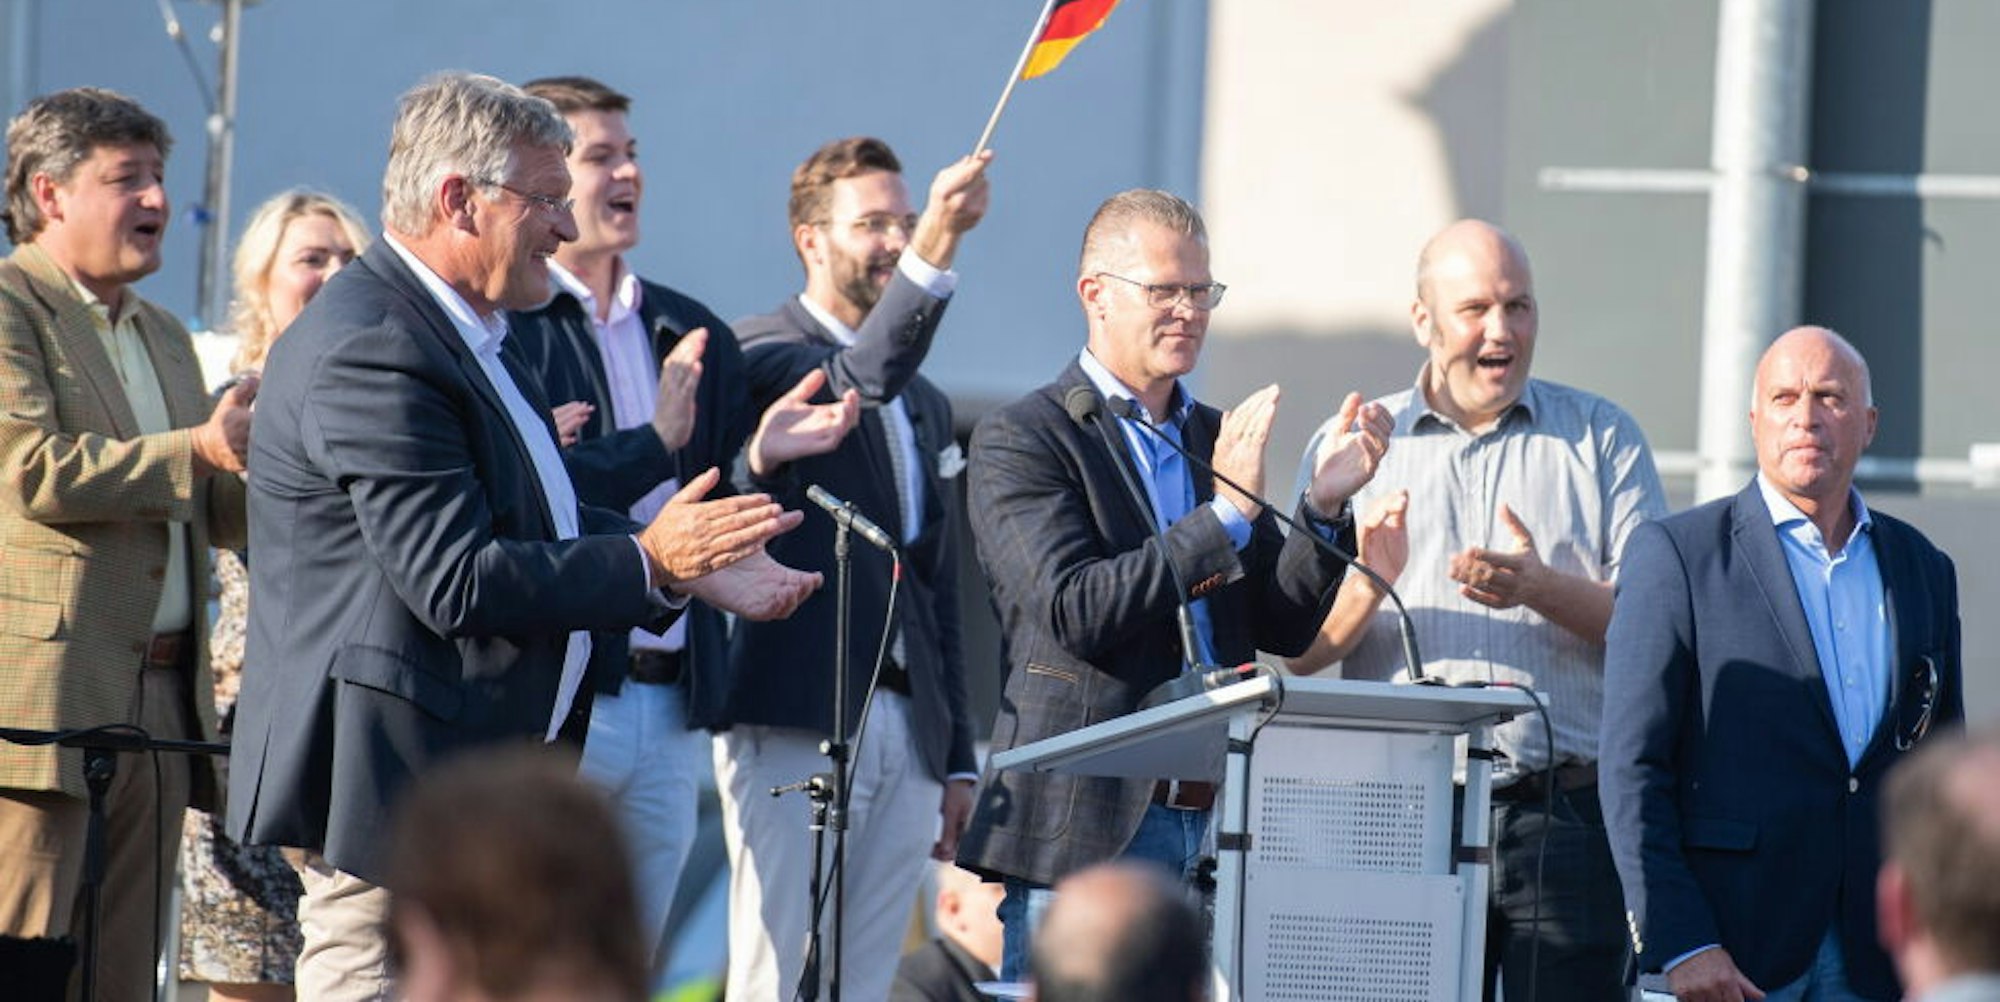 Wahlkampf mit Bundessprecher: Im September präsentierte die Kreis-AfD Jörg Meuthen (vorne links) in Euskirchen. Am Tag darauf erhielt sie unter anderem vier Mandate für den Kreistag.